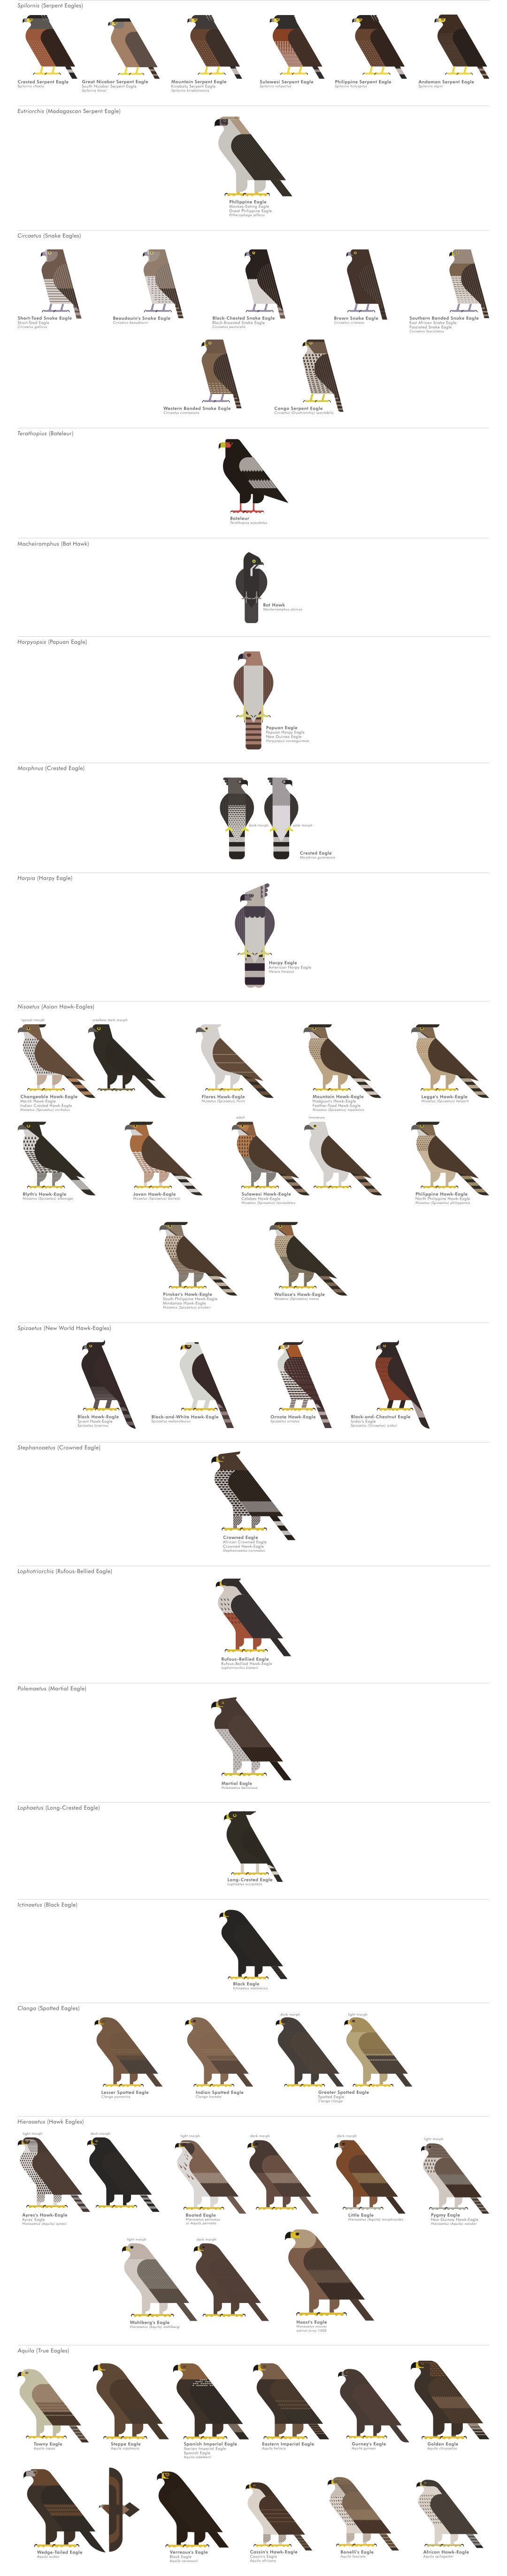 scott partridge - ave - avian vector encyclopedia - accipitriformes eagles - bird vector art